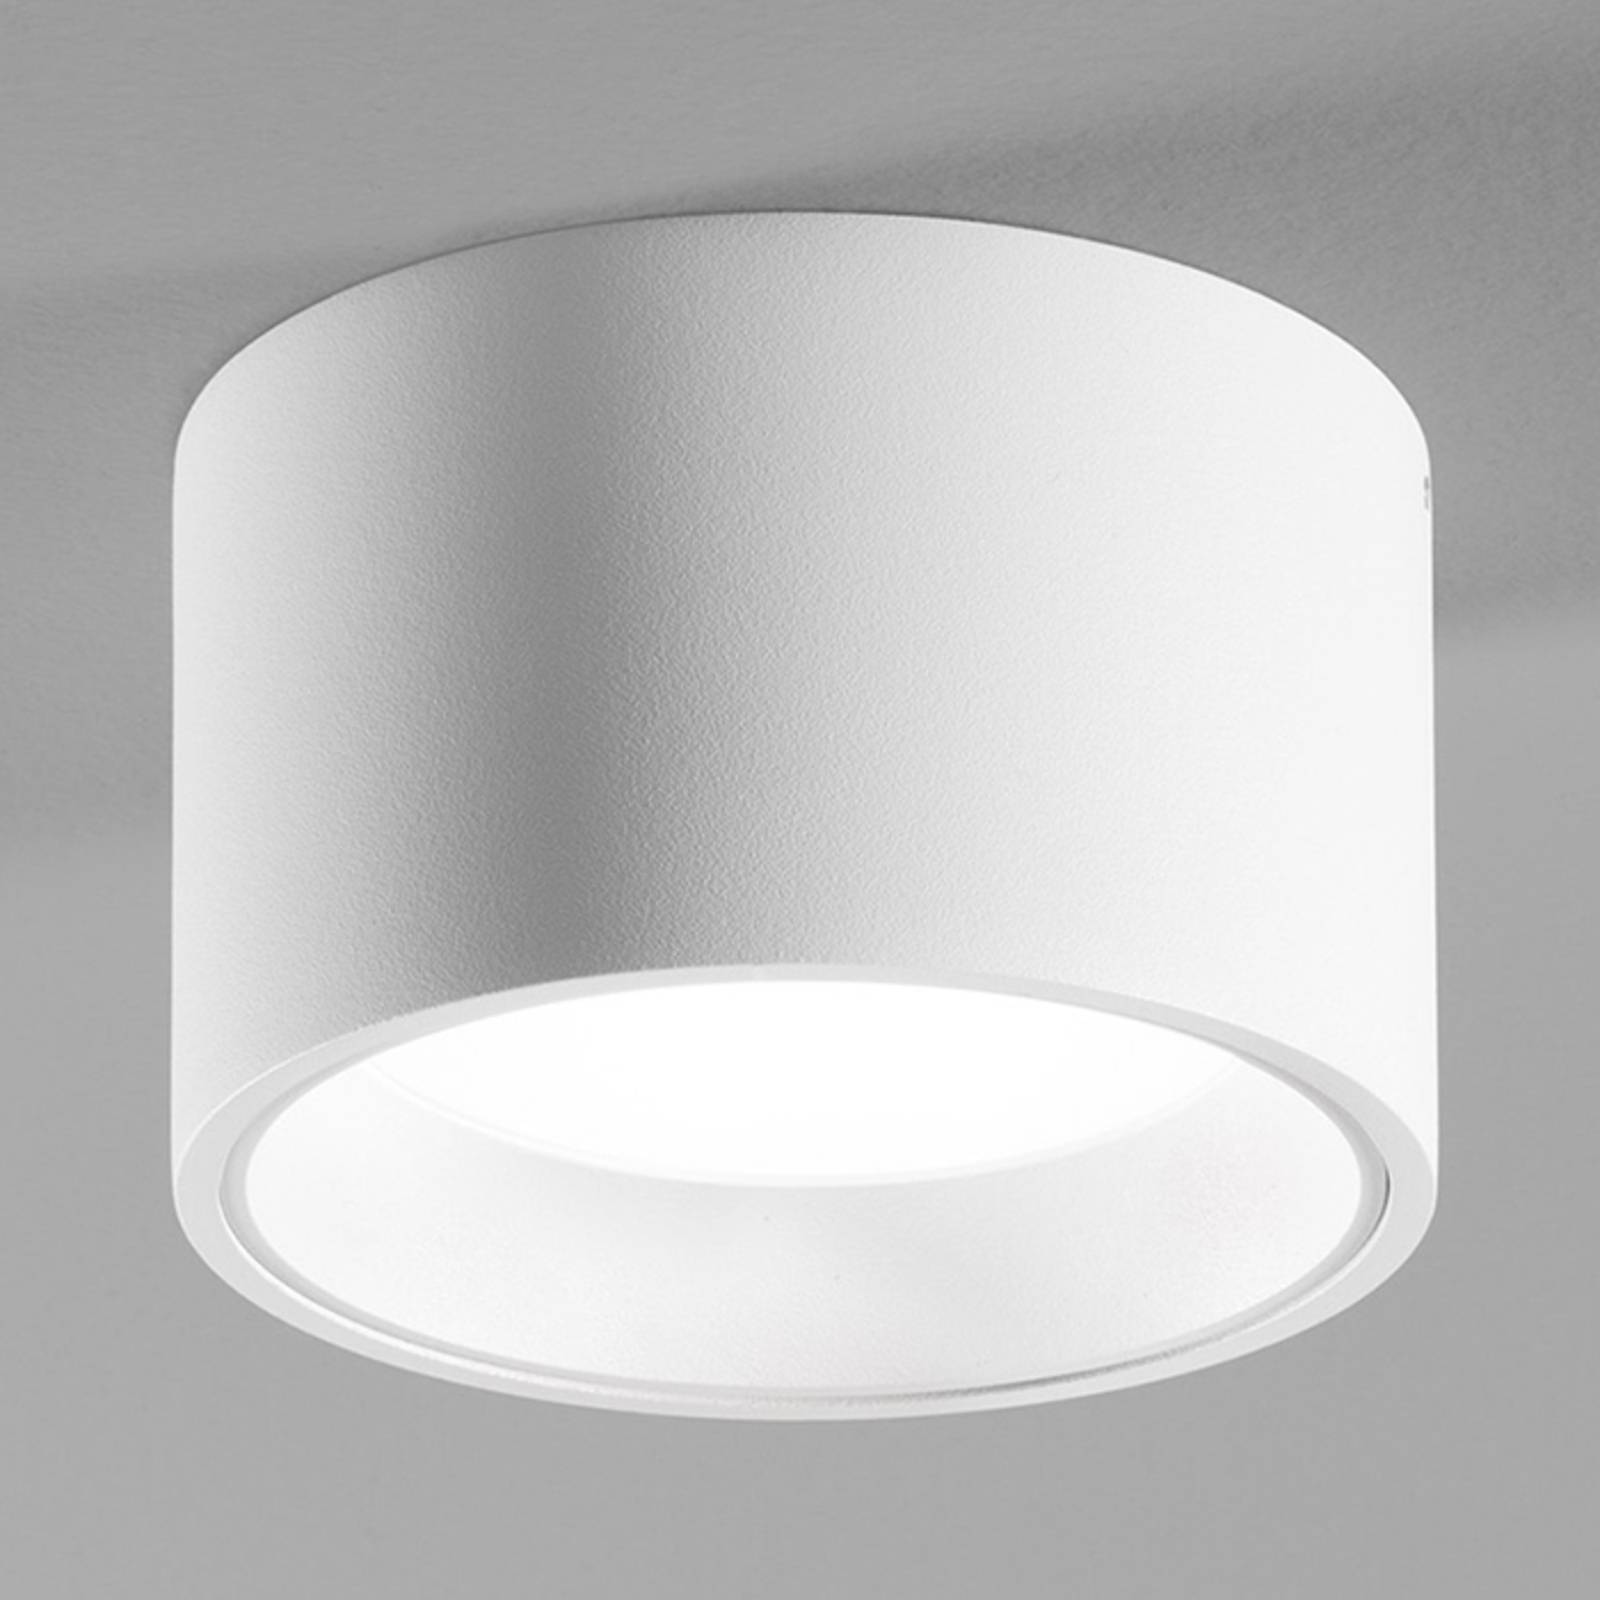 Egger licht fehér led lámpa ringo ip54-es ip54-es lámpával